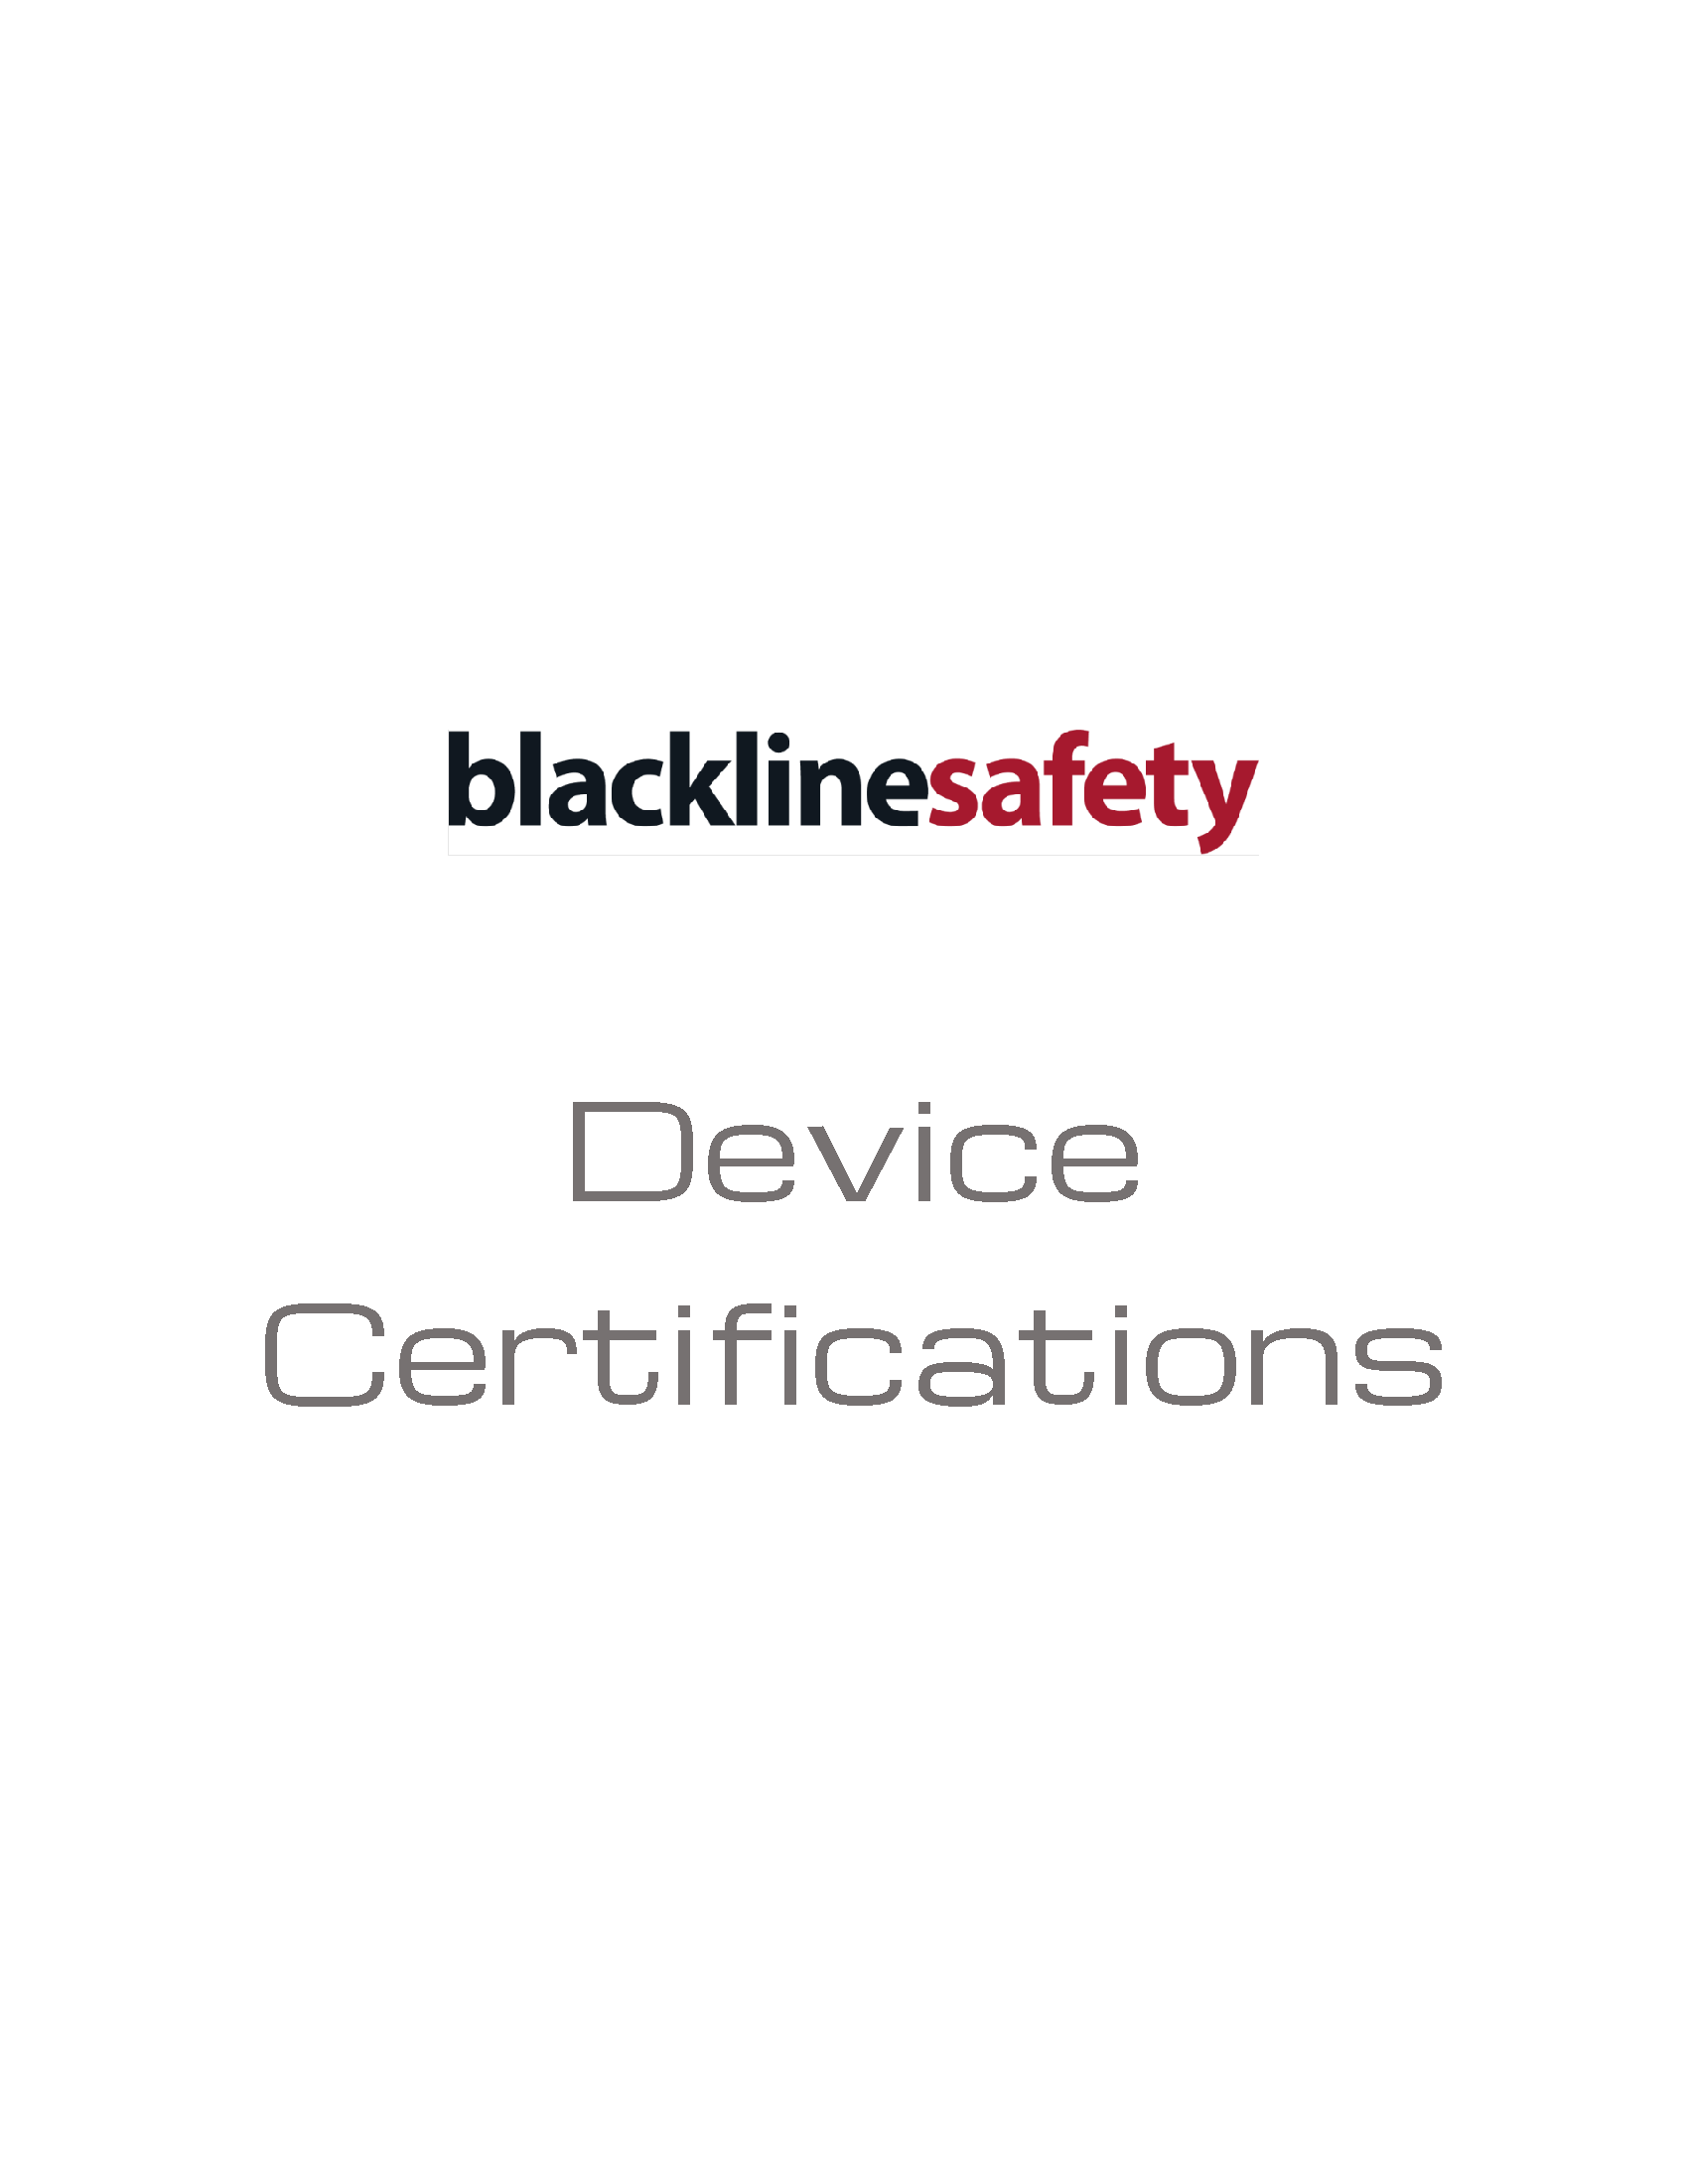 Image des certifications de dispositifs